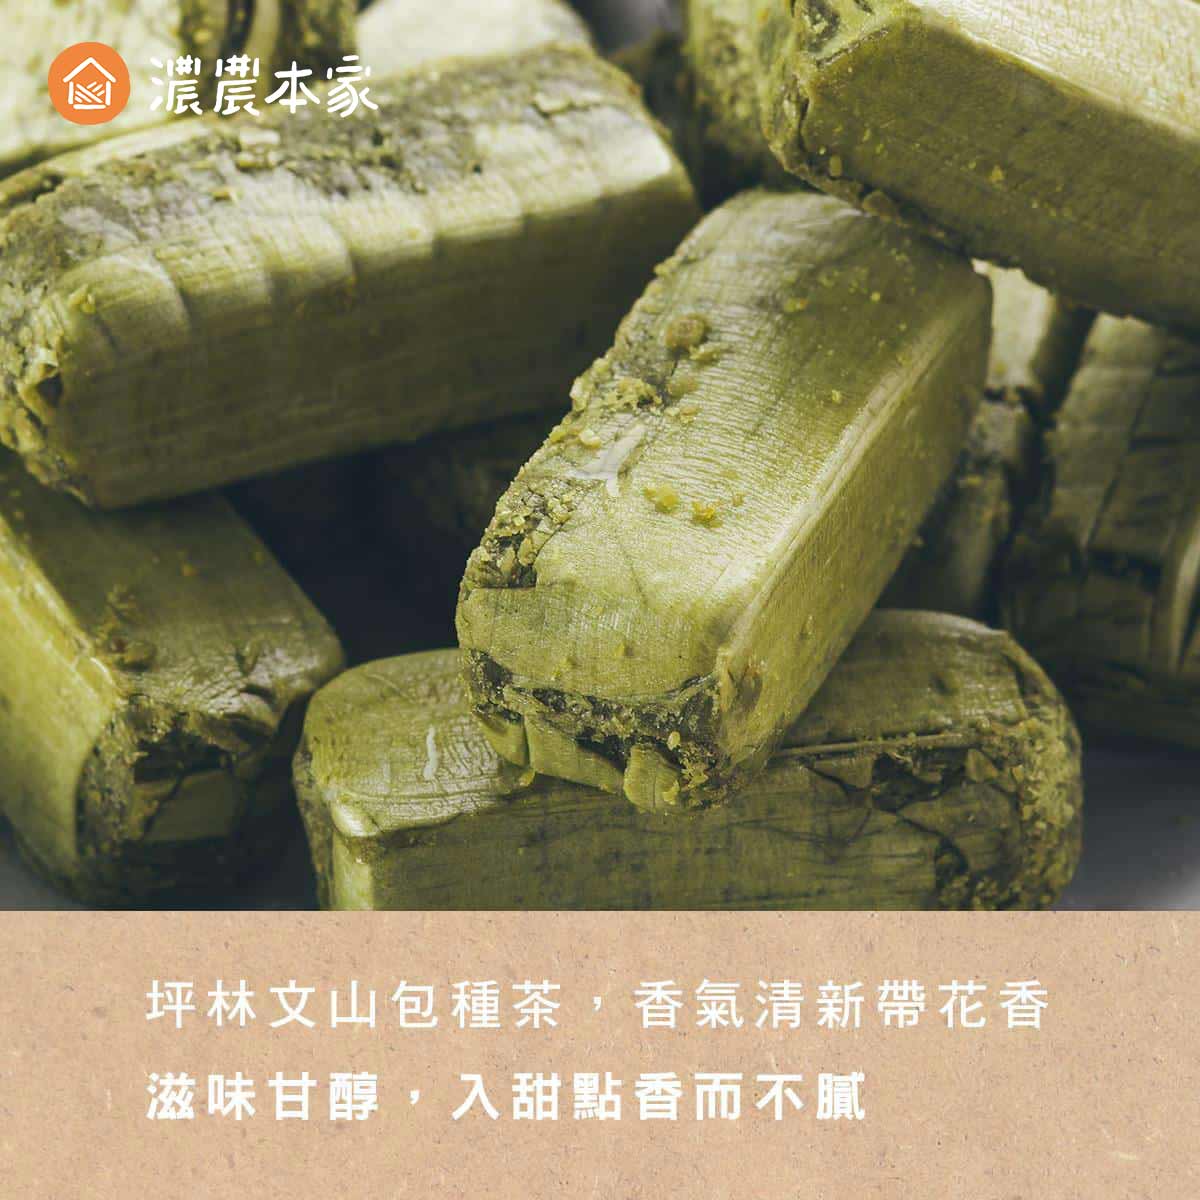 包種茶酥選用北台灣坪林包種茶製作